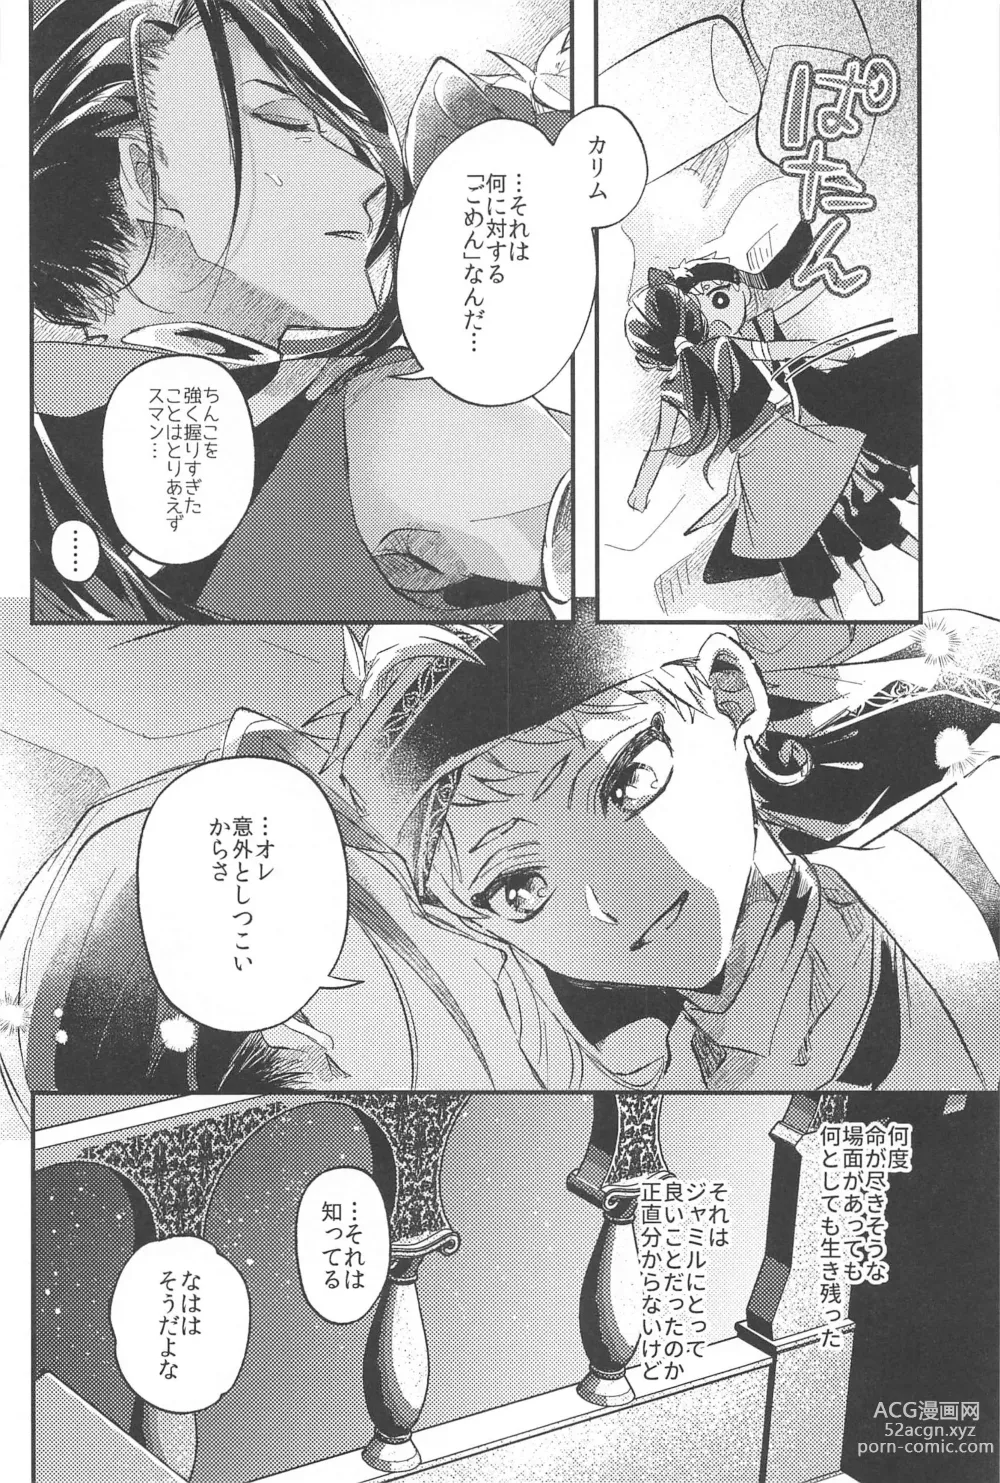 Page 40 of doujinshi Kantan dakara Muzukashii